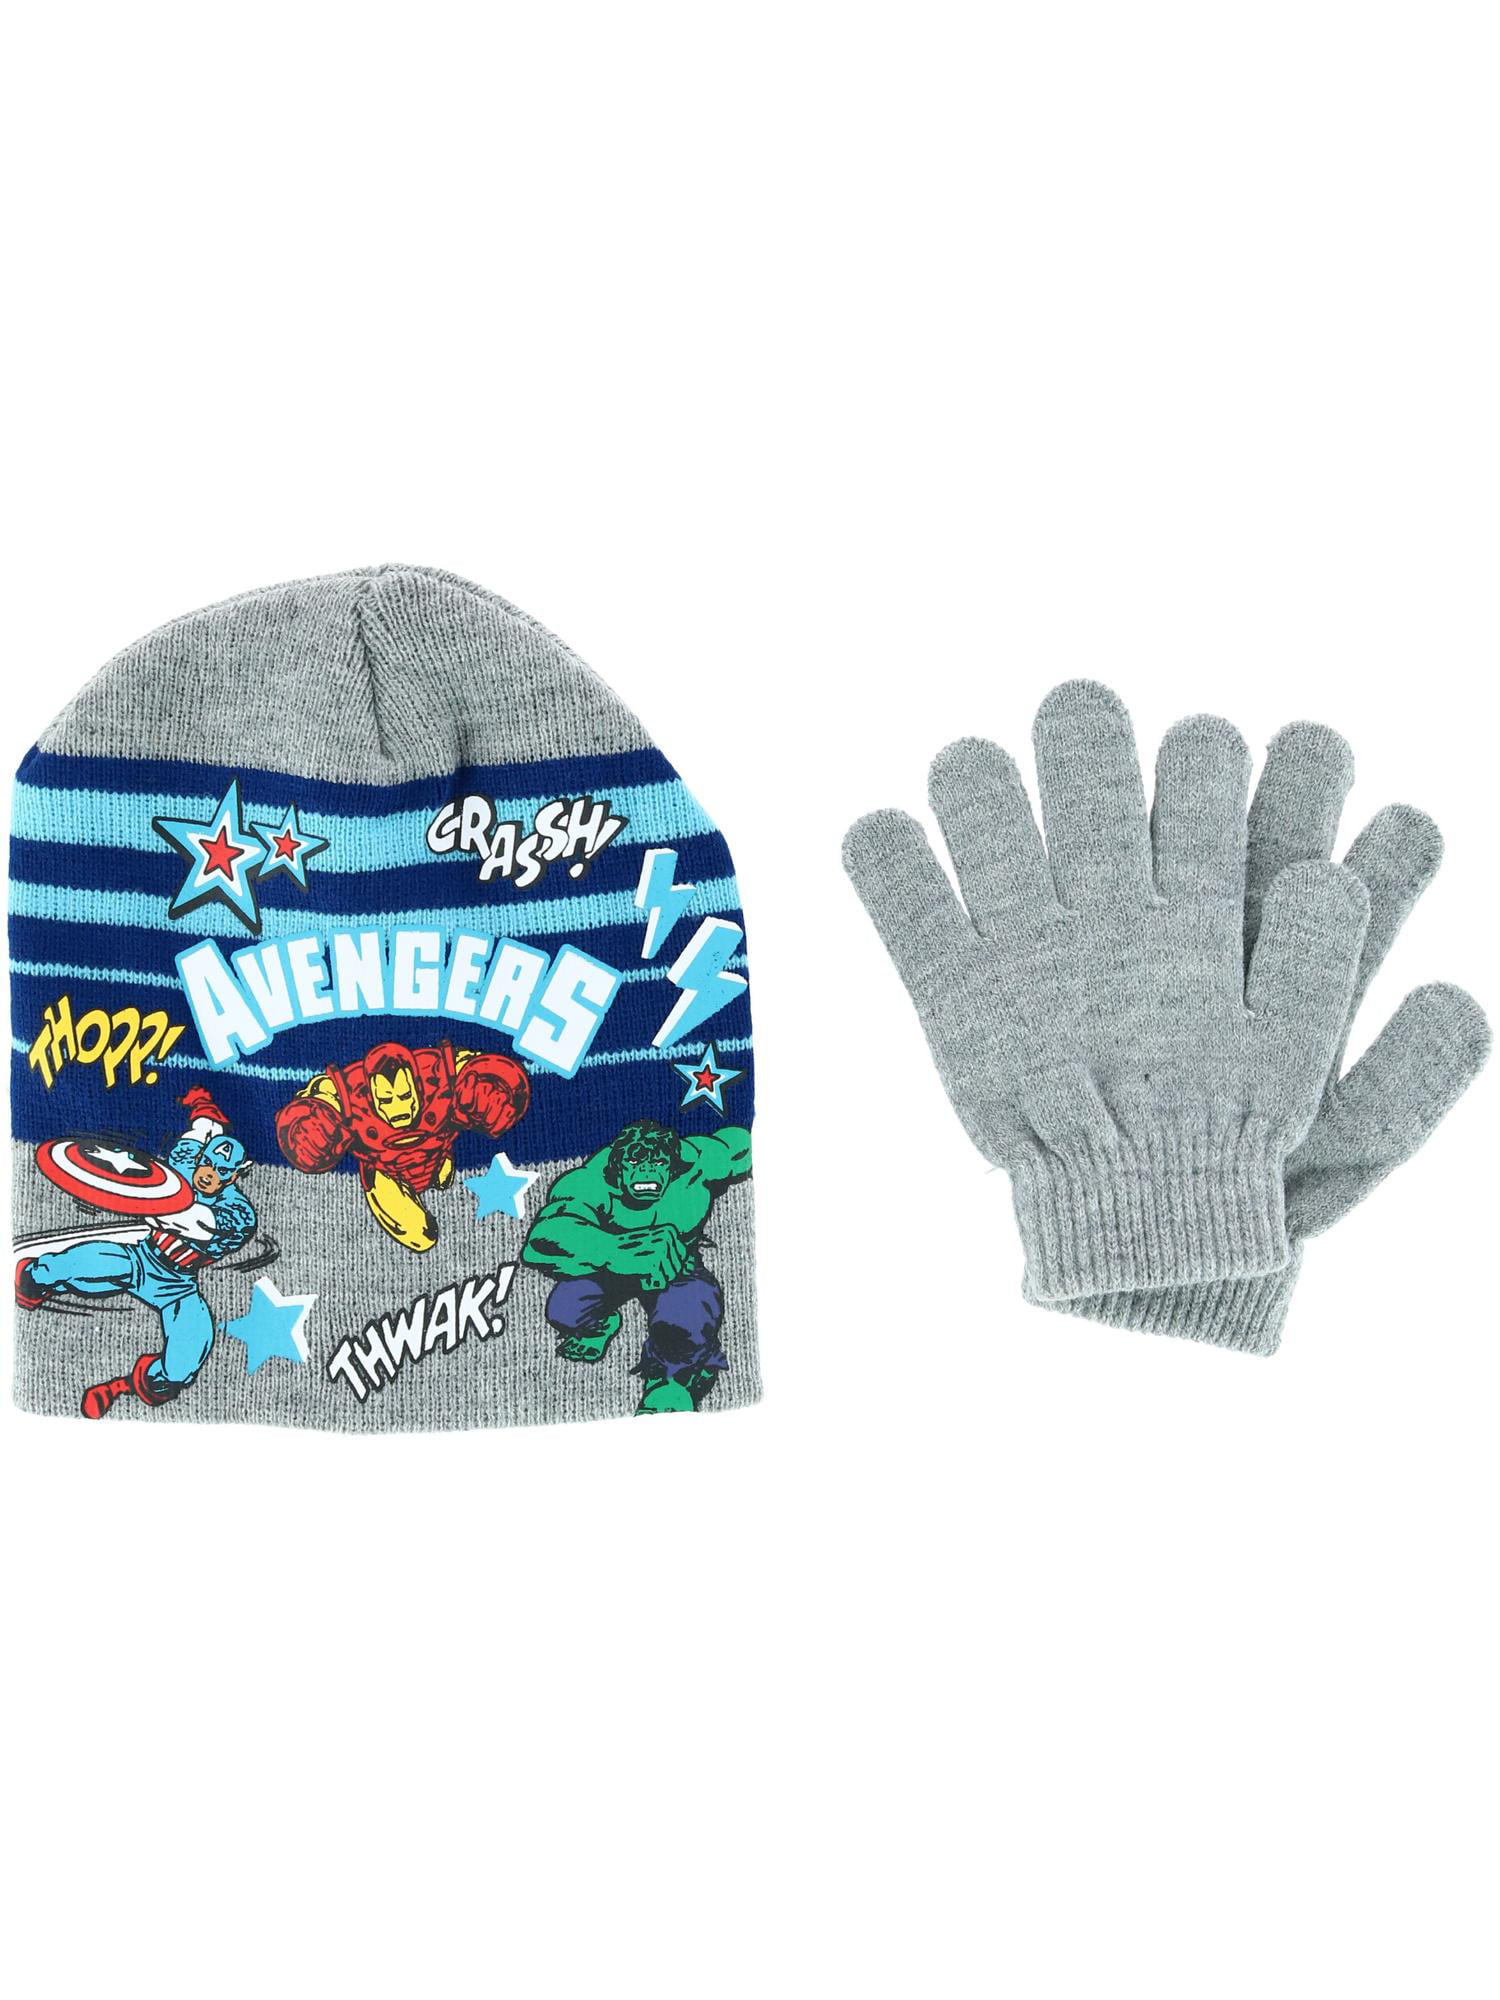 Boys Marvel Avengers Winter Knit Pom Pom Bobble Hat & Gloves Set 6-12 Years 